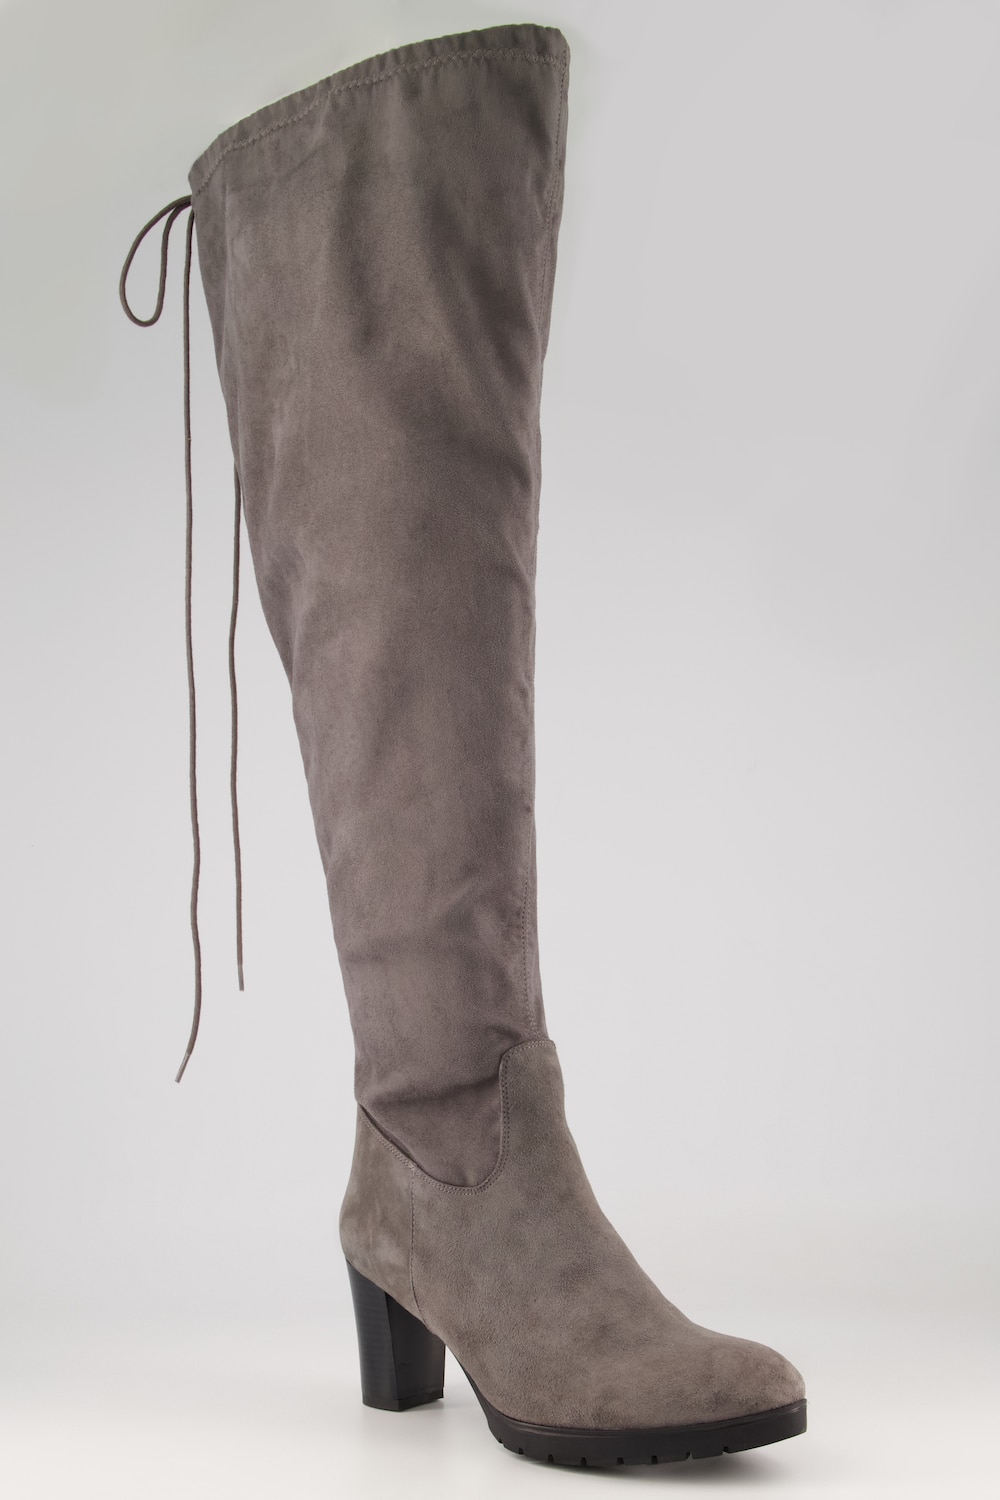 Overknee-Stiefel, Damen, grau, Größe: 40, Leder/Synthetische Fasern, Ulla Popken von Ulla Popken